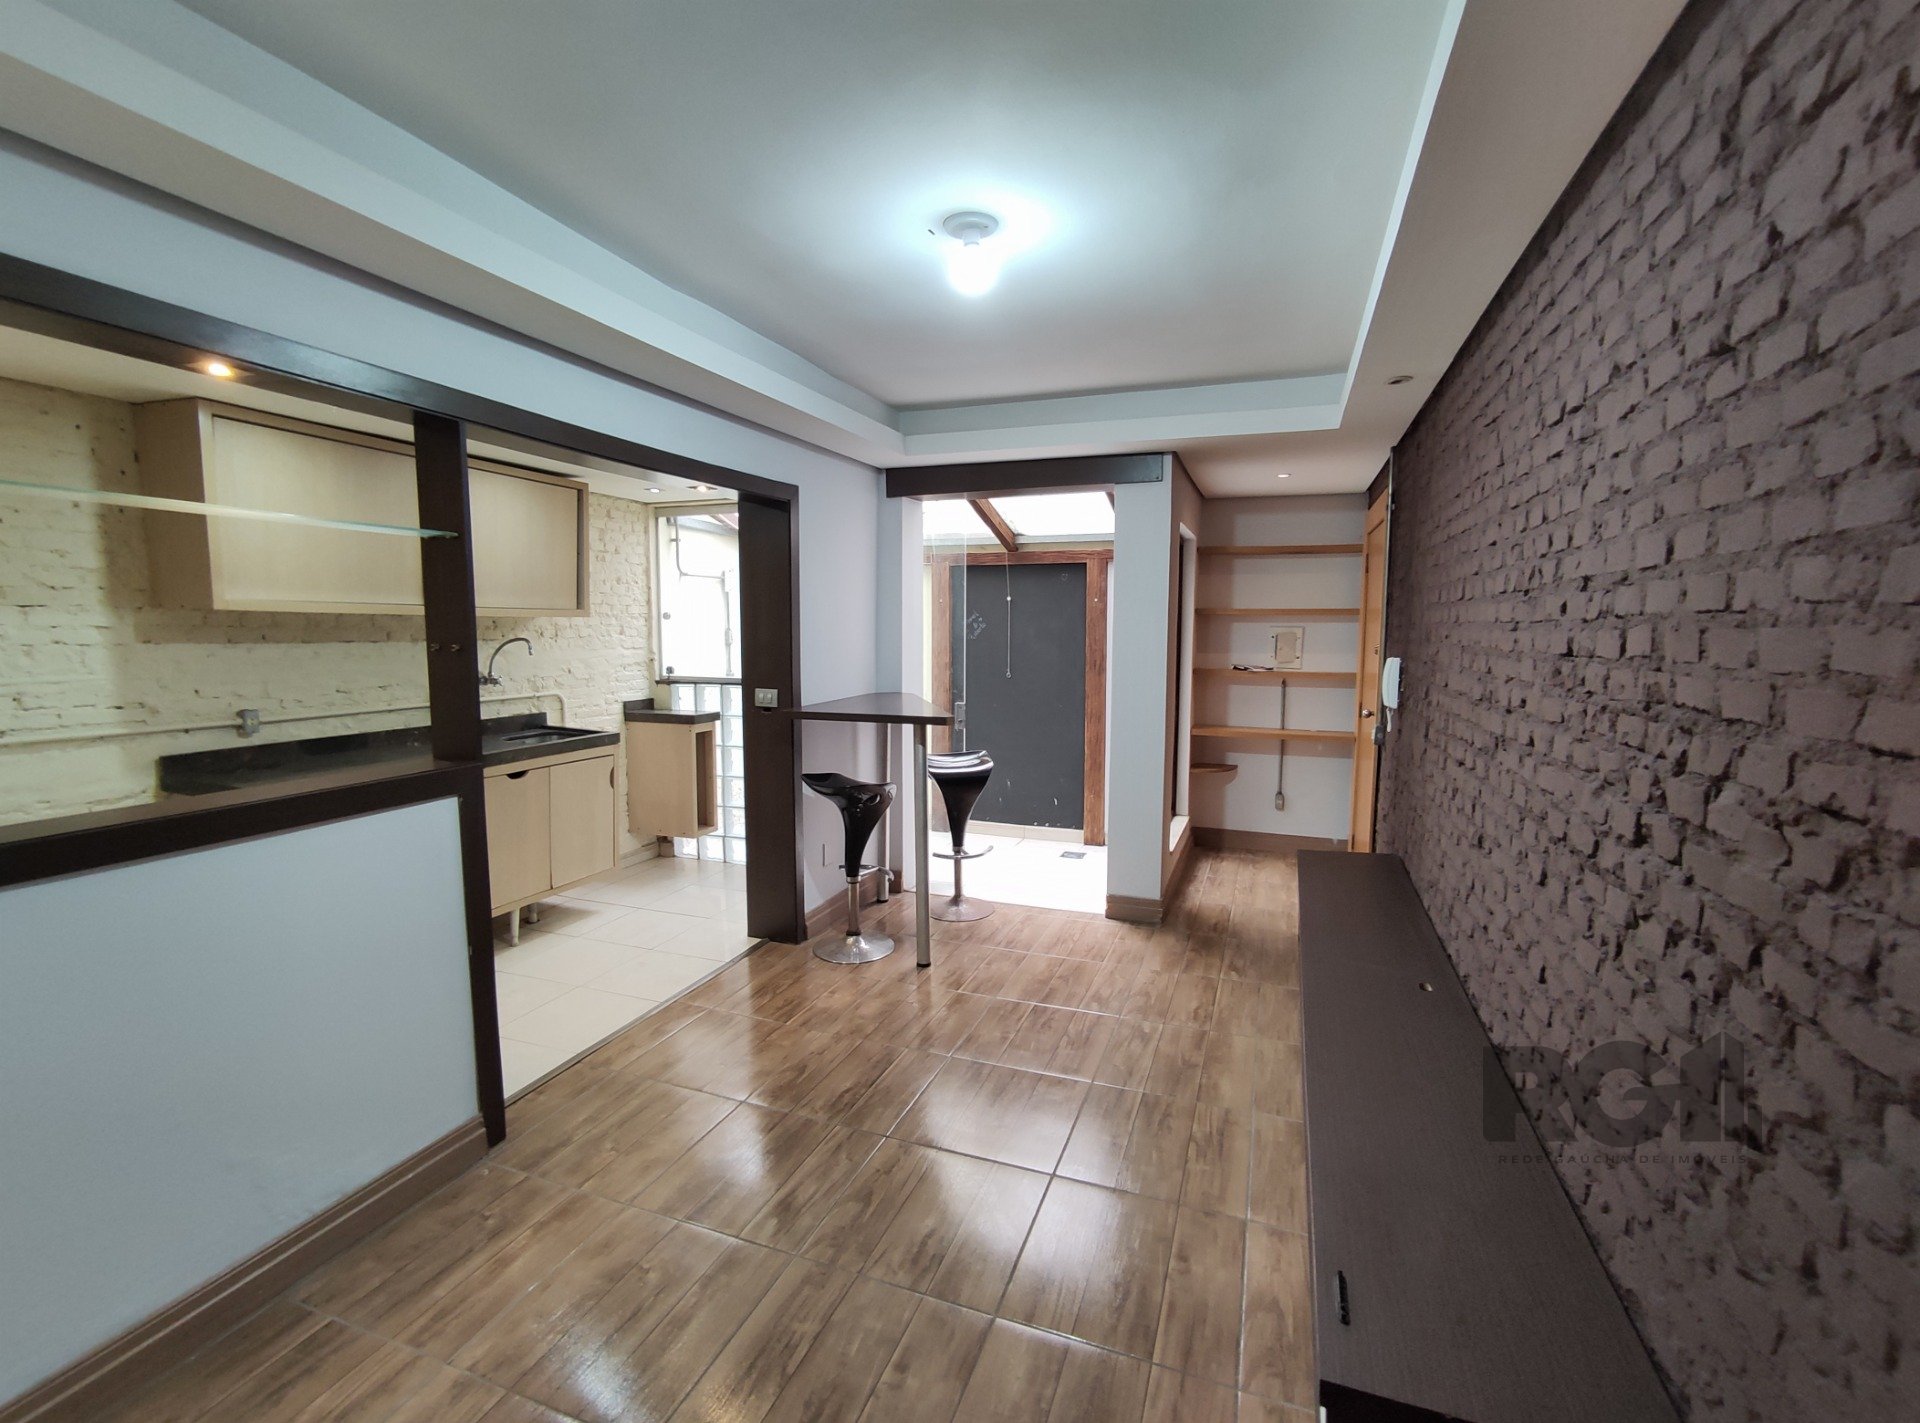 Apartamento com 40m², 1 dormitório no bairro Petrópolis em Porto Alegre para Comprar